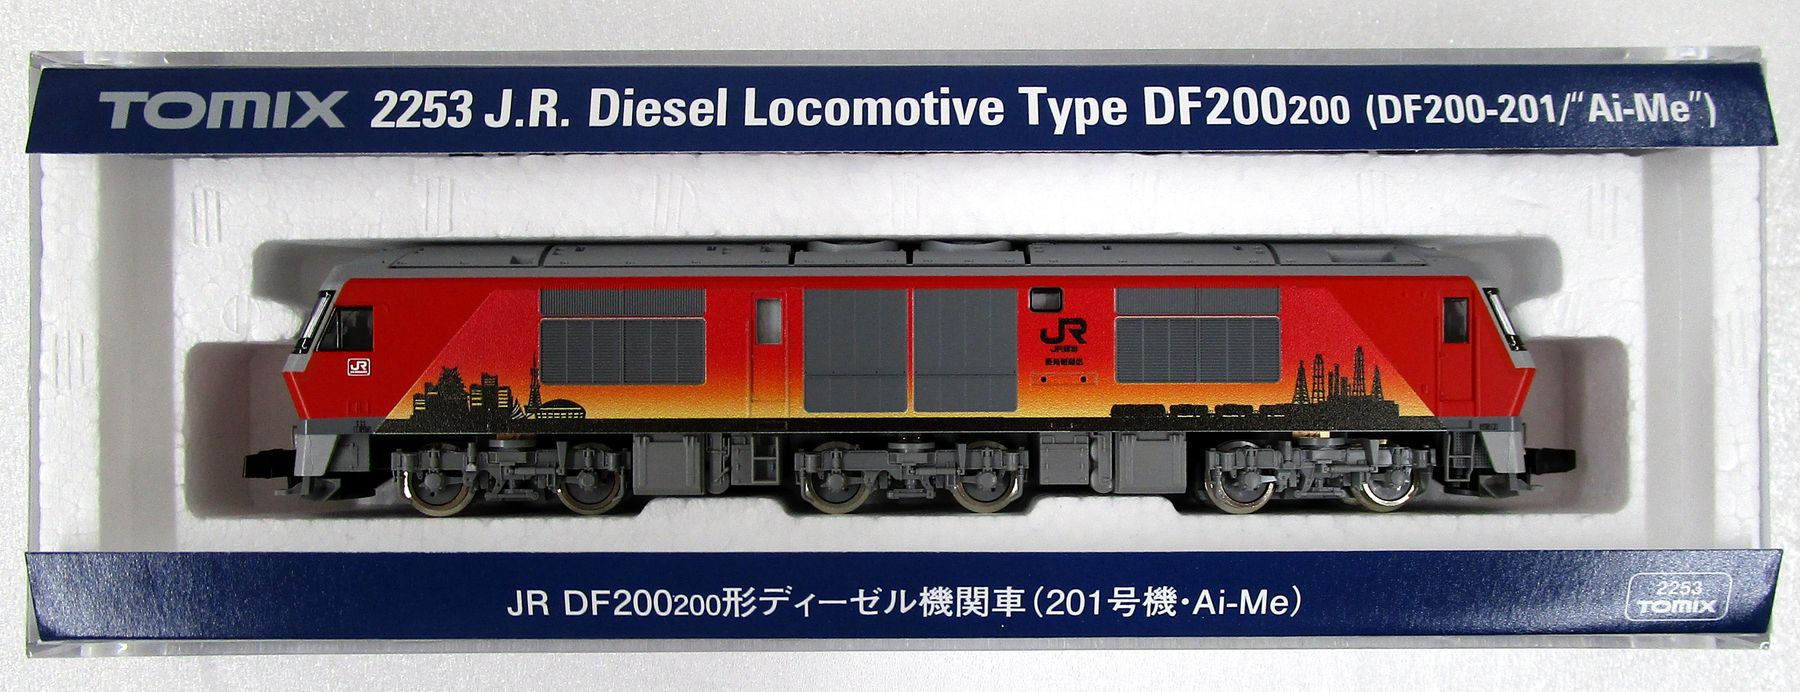 【中古】Nゲージ TOMIX(トミックス) 2253 JR DF200-200形ディーゼル機関車(201号機・Ai-Me) 【A】